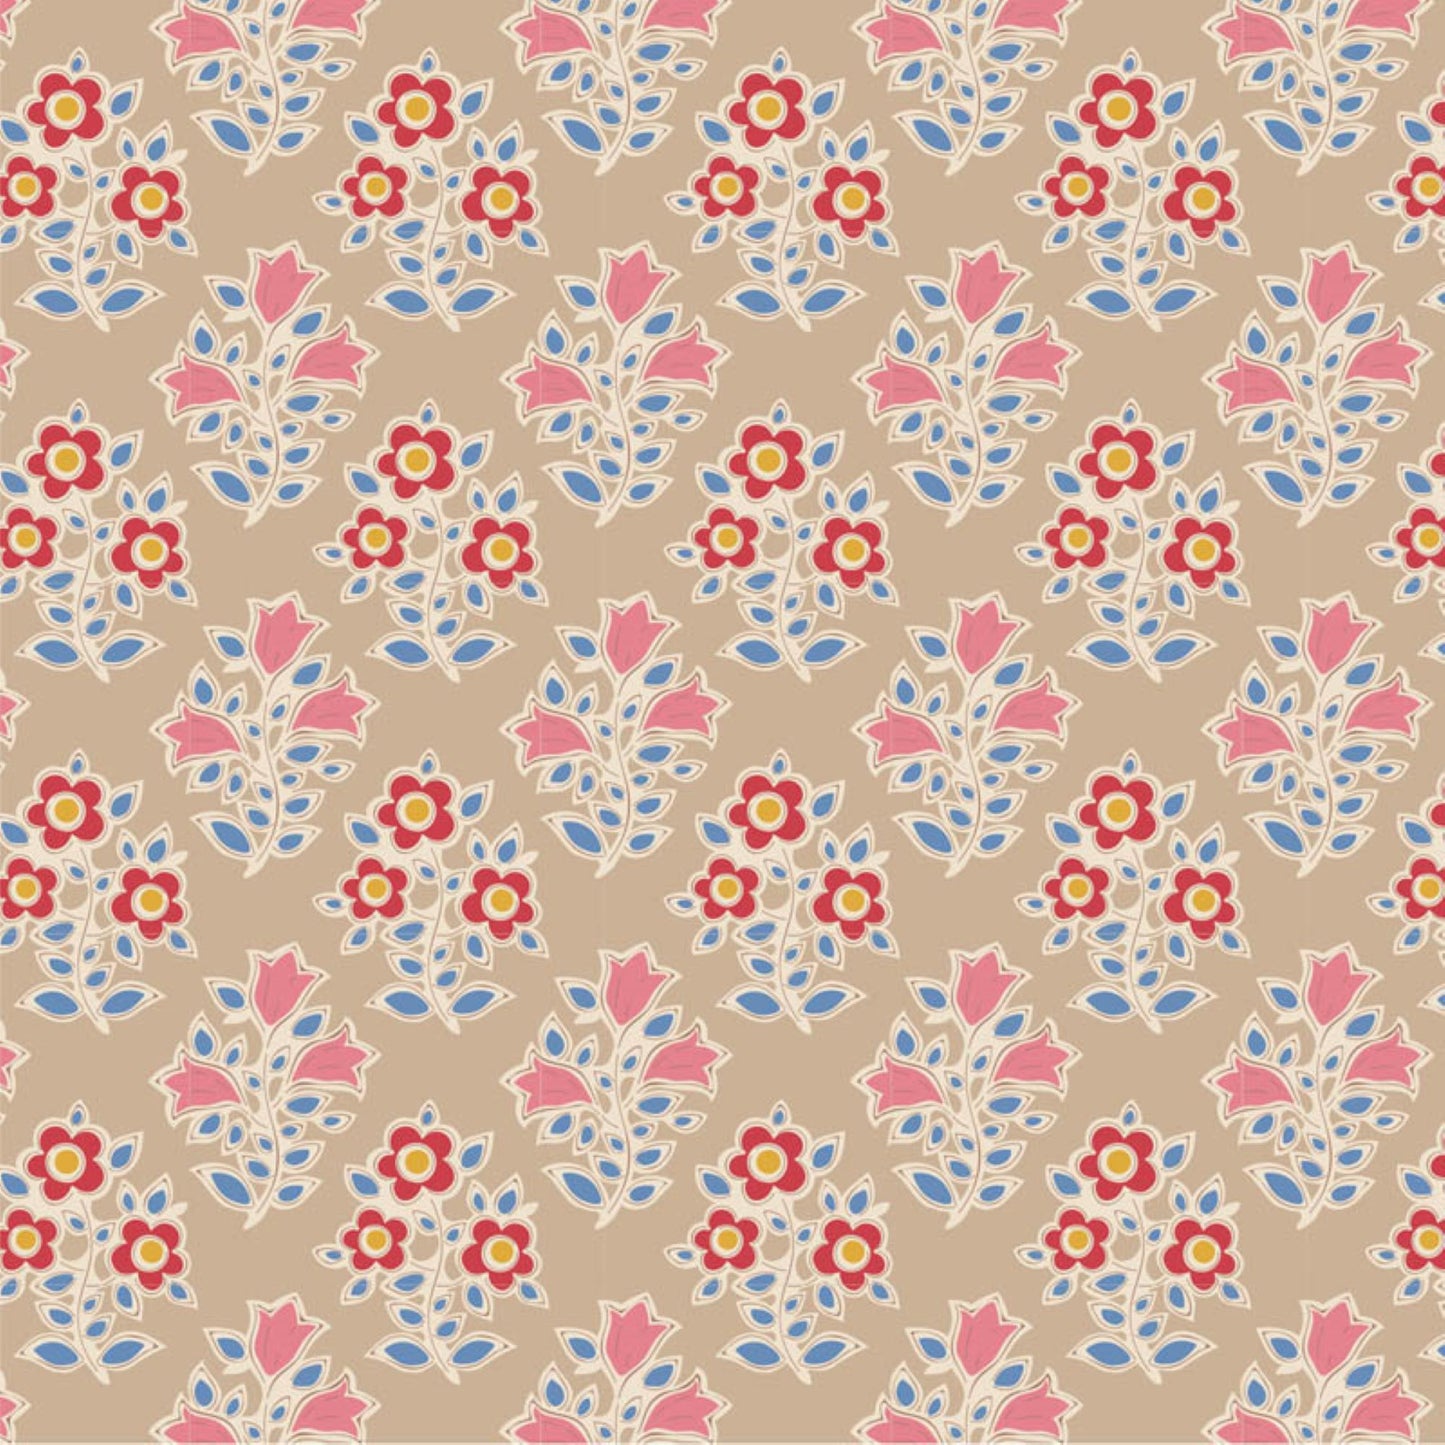 Tilda Farm Flowers floral bundle 8 Fat Quarters cotton quilt fabric